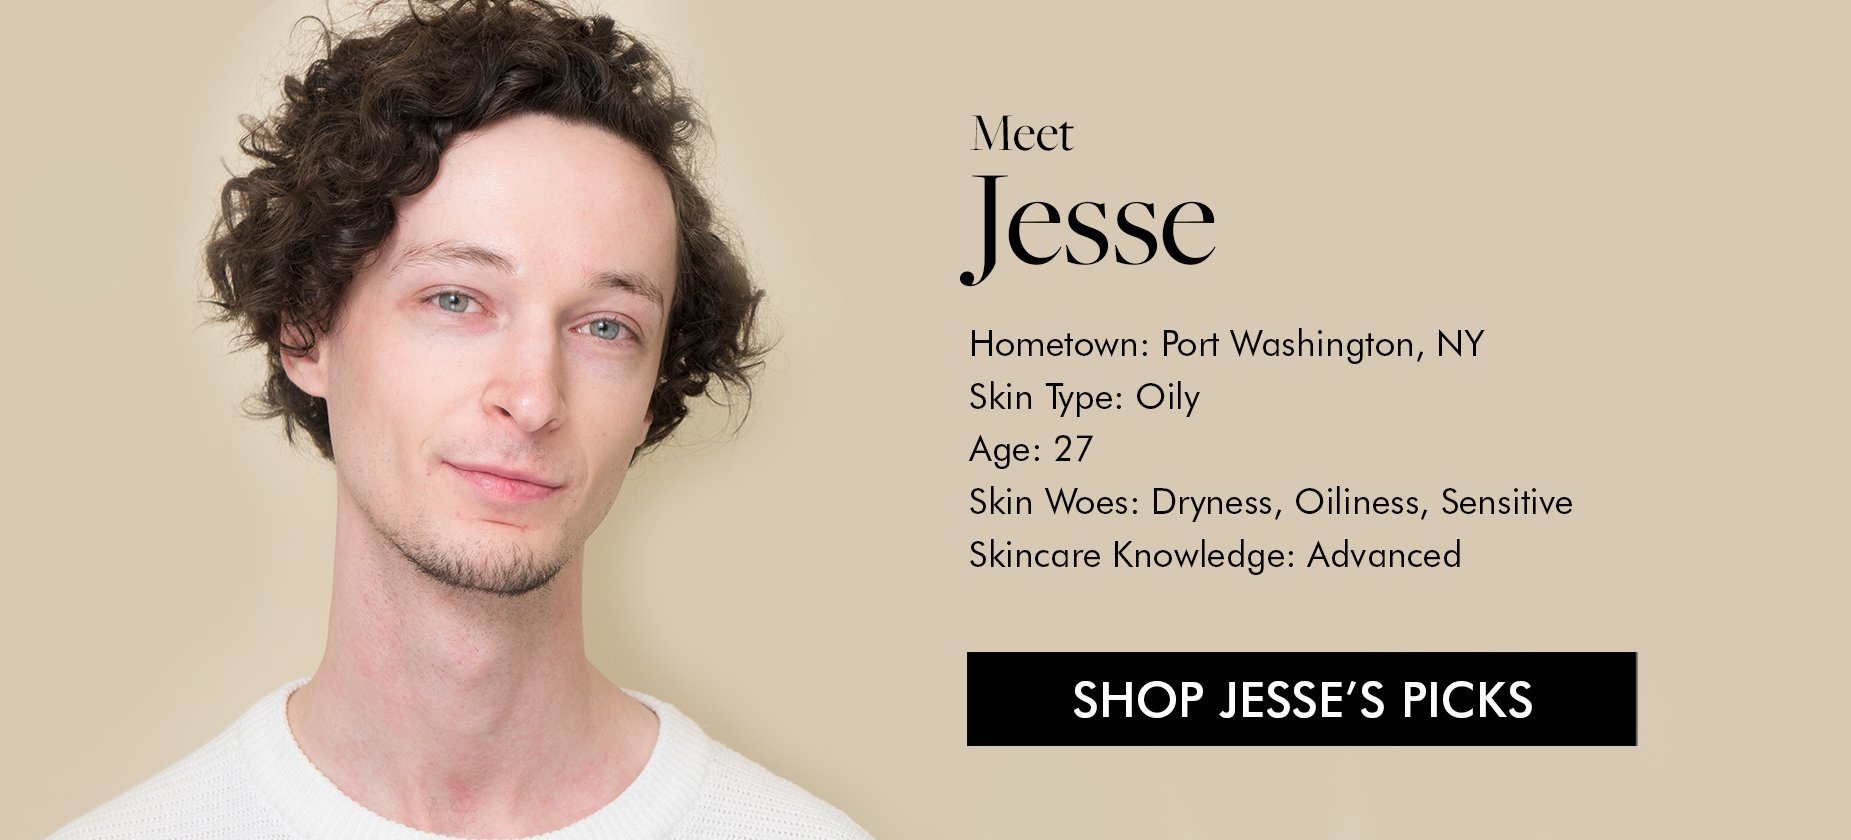 Shop Jesse's Picks